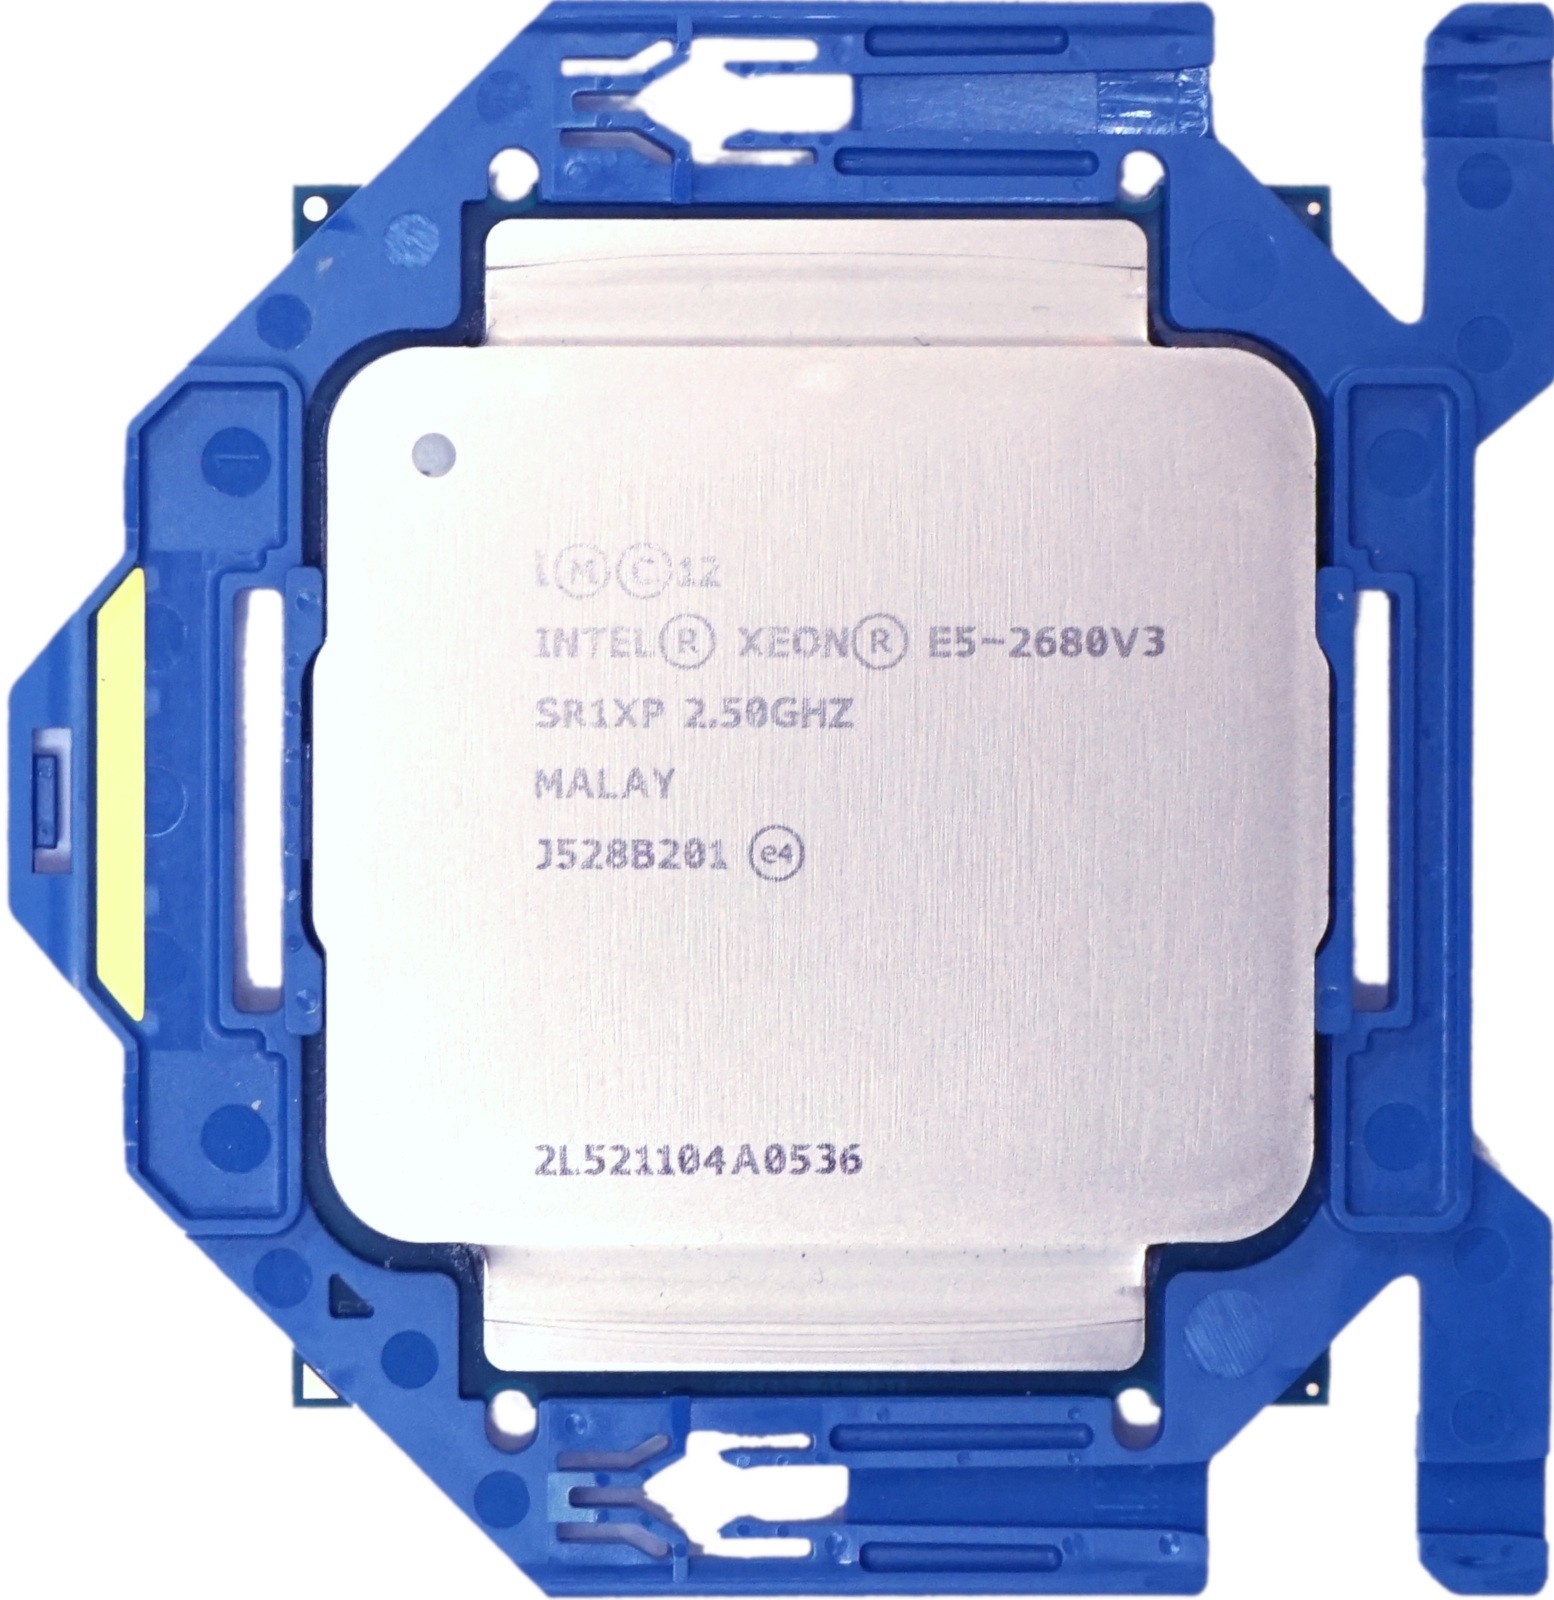 Intel Xeon E5-2680 V3 (SR1XP) 2.50Ghz Twelve (12) Core FCLGA2011-3 120W